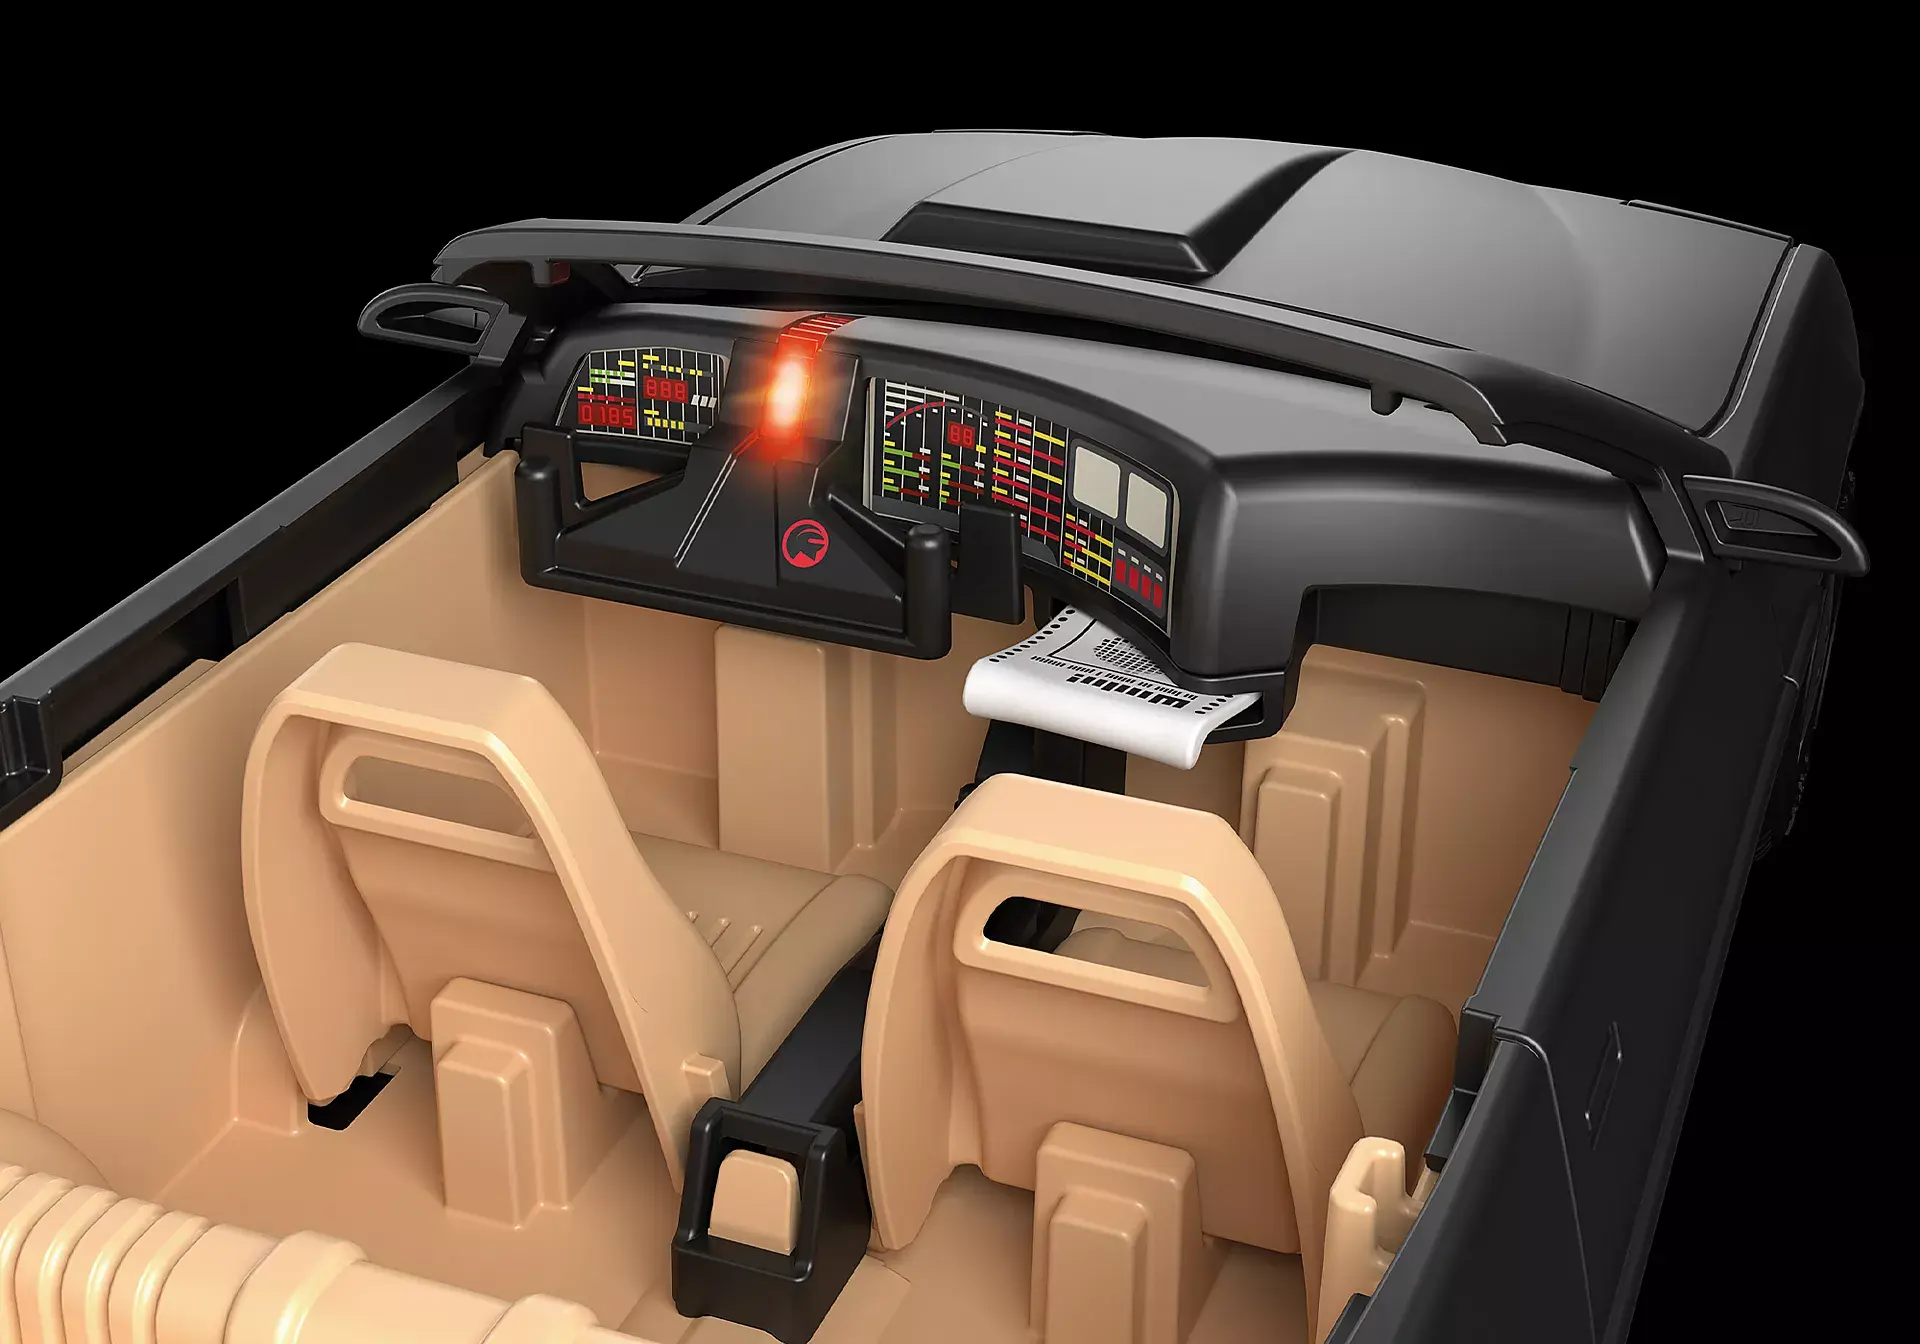 Playmobil Playmobil 70924 - Knight Rider - K.I.T.T.